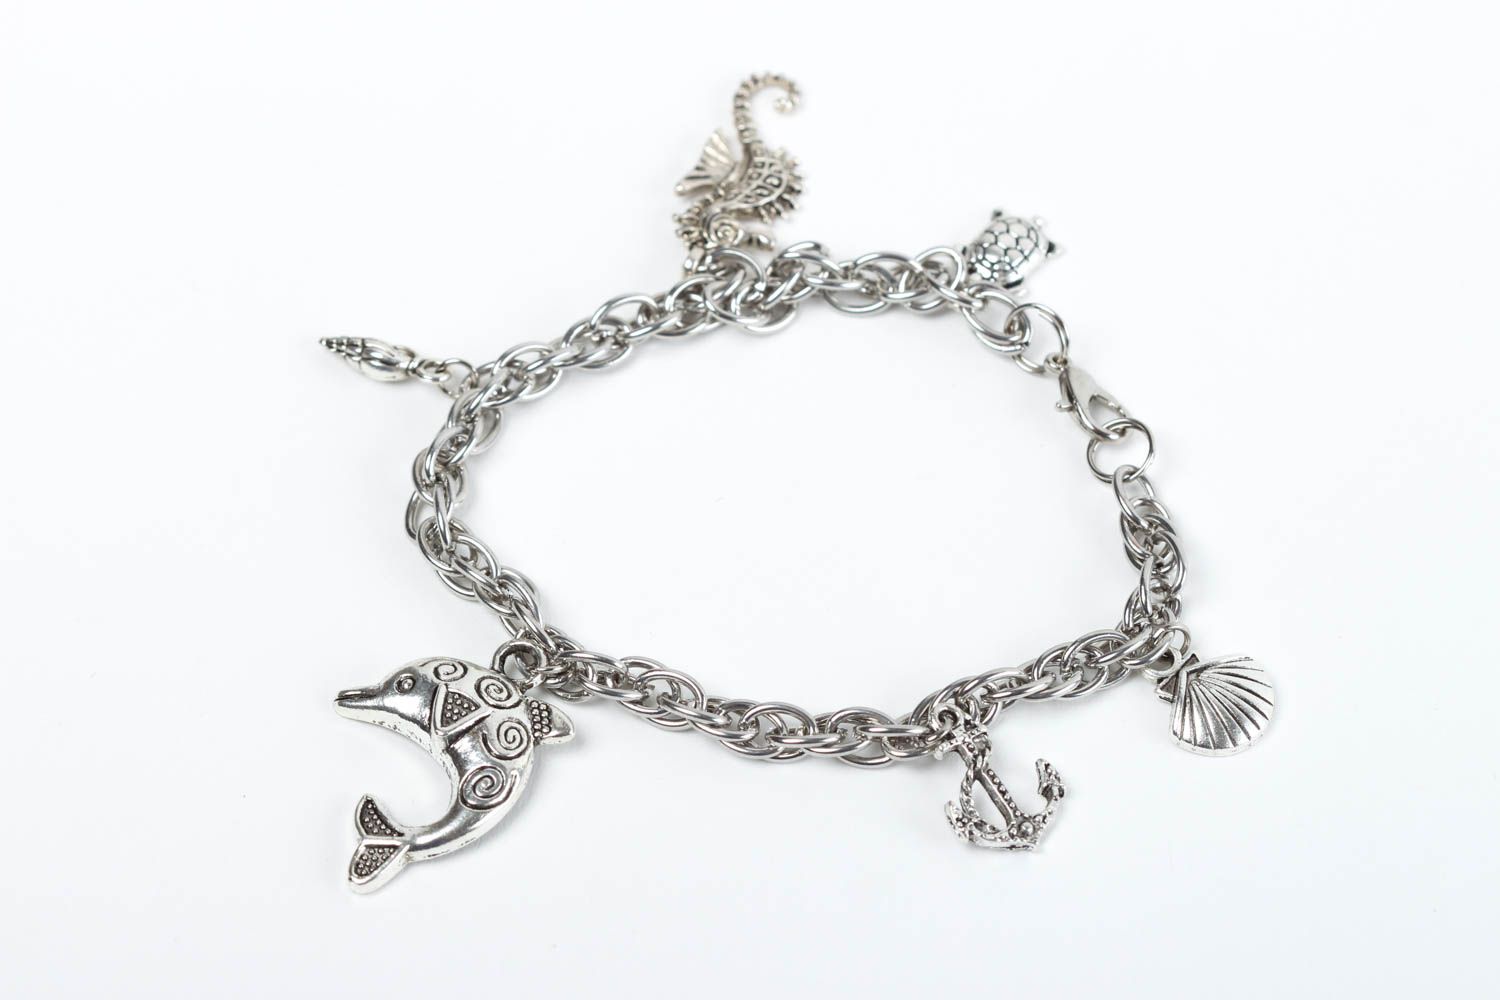 Handmade bracelet designer bracelet with charms unusual gift for women photo 2